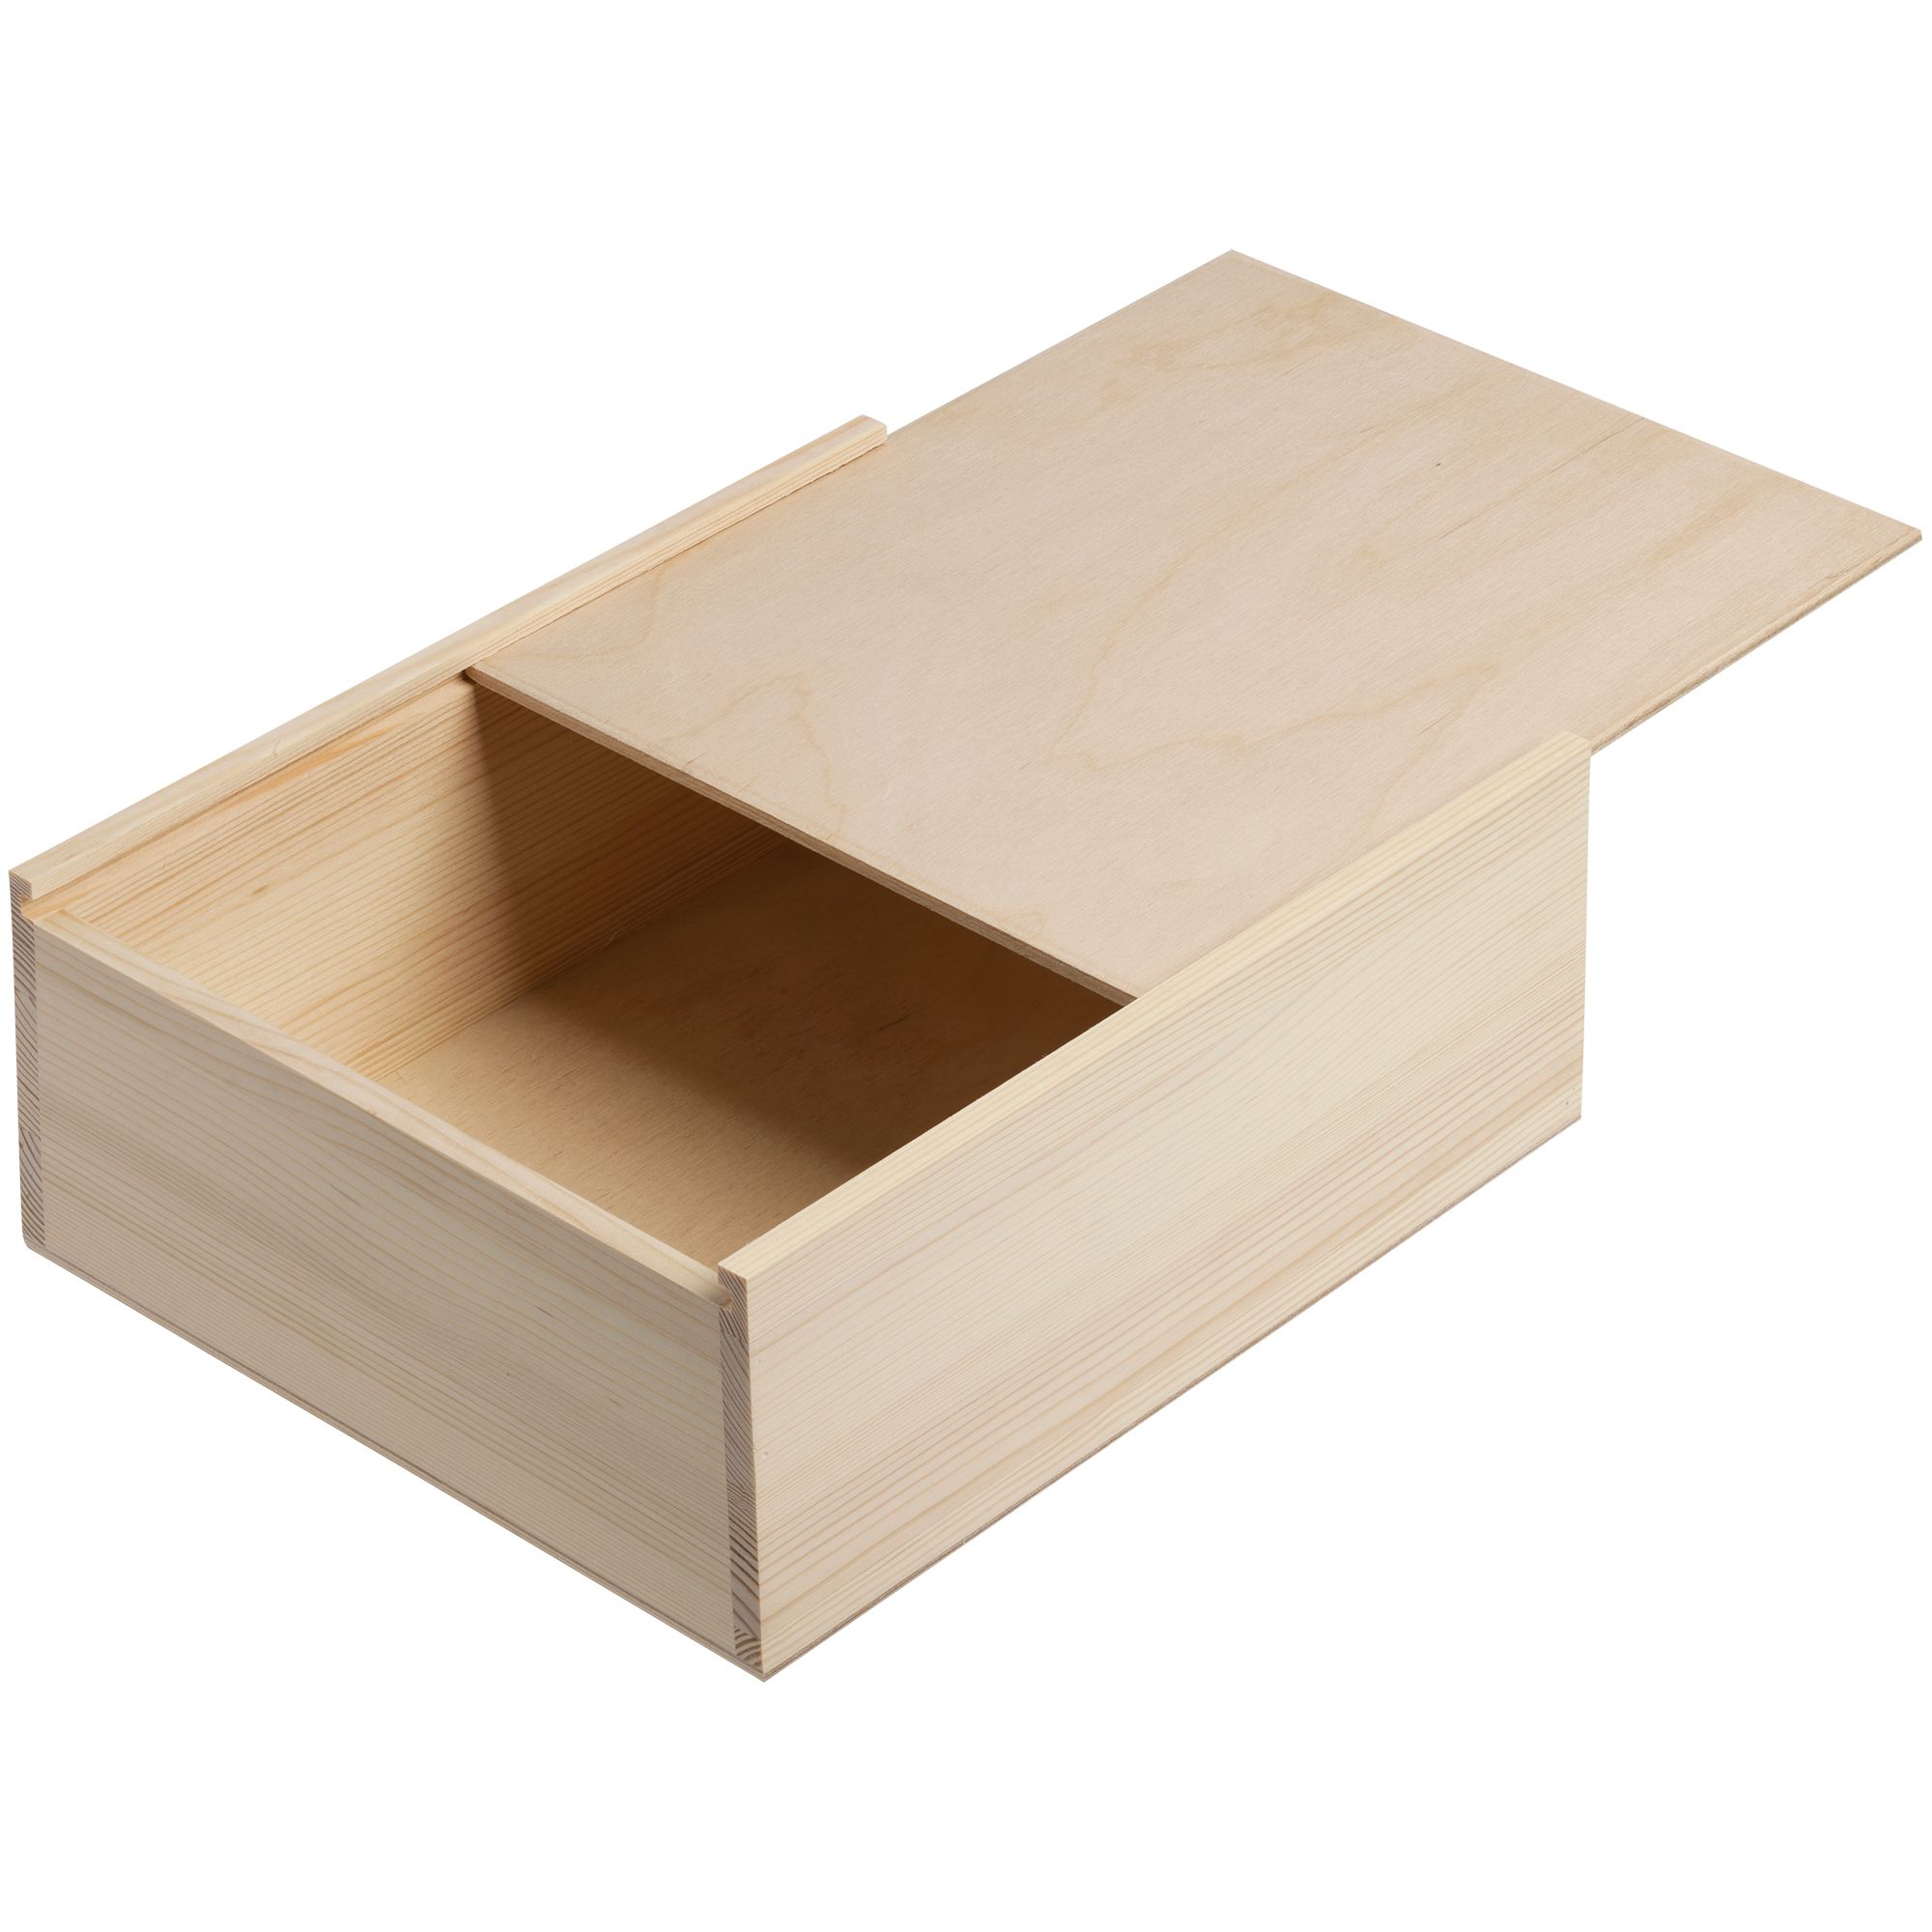 Деревянная коробка с крышкой. Ящик деревянный 25.5x15.5x10 см 057374. Деревянные коробки. Коробка деревянная. Деревянная коробка для подарка.